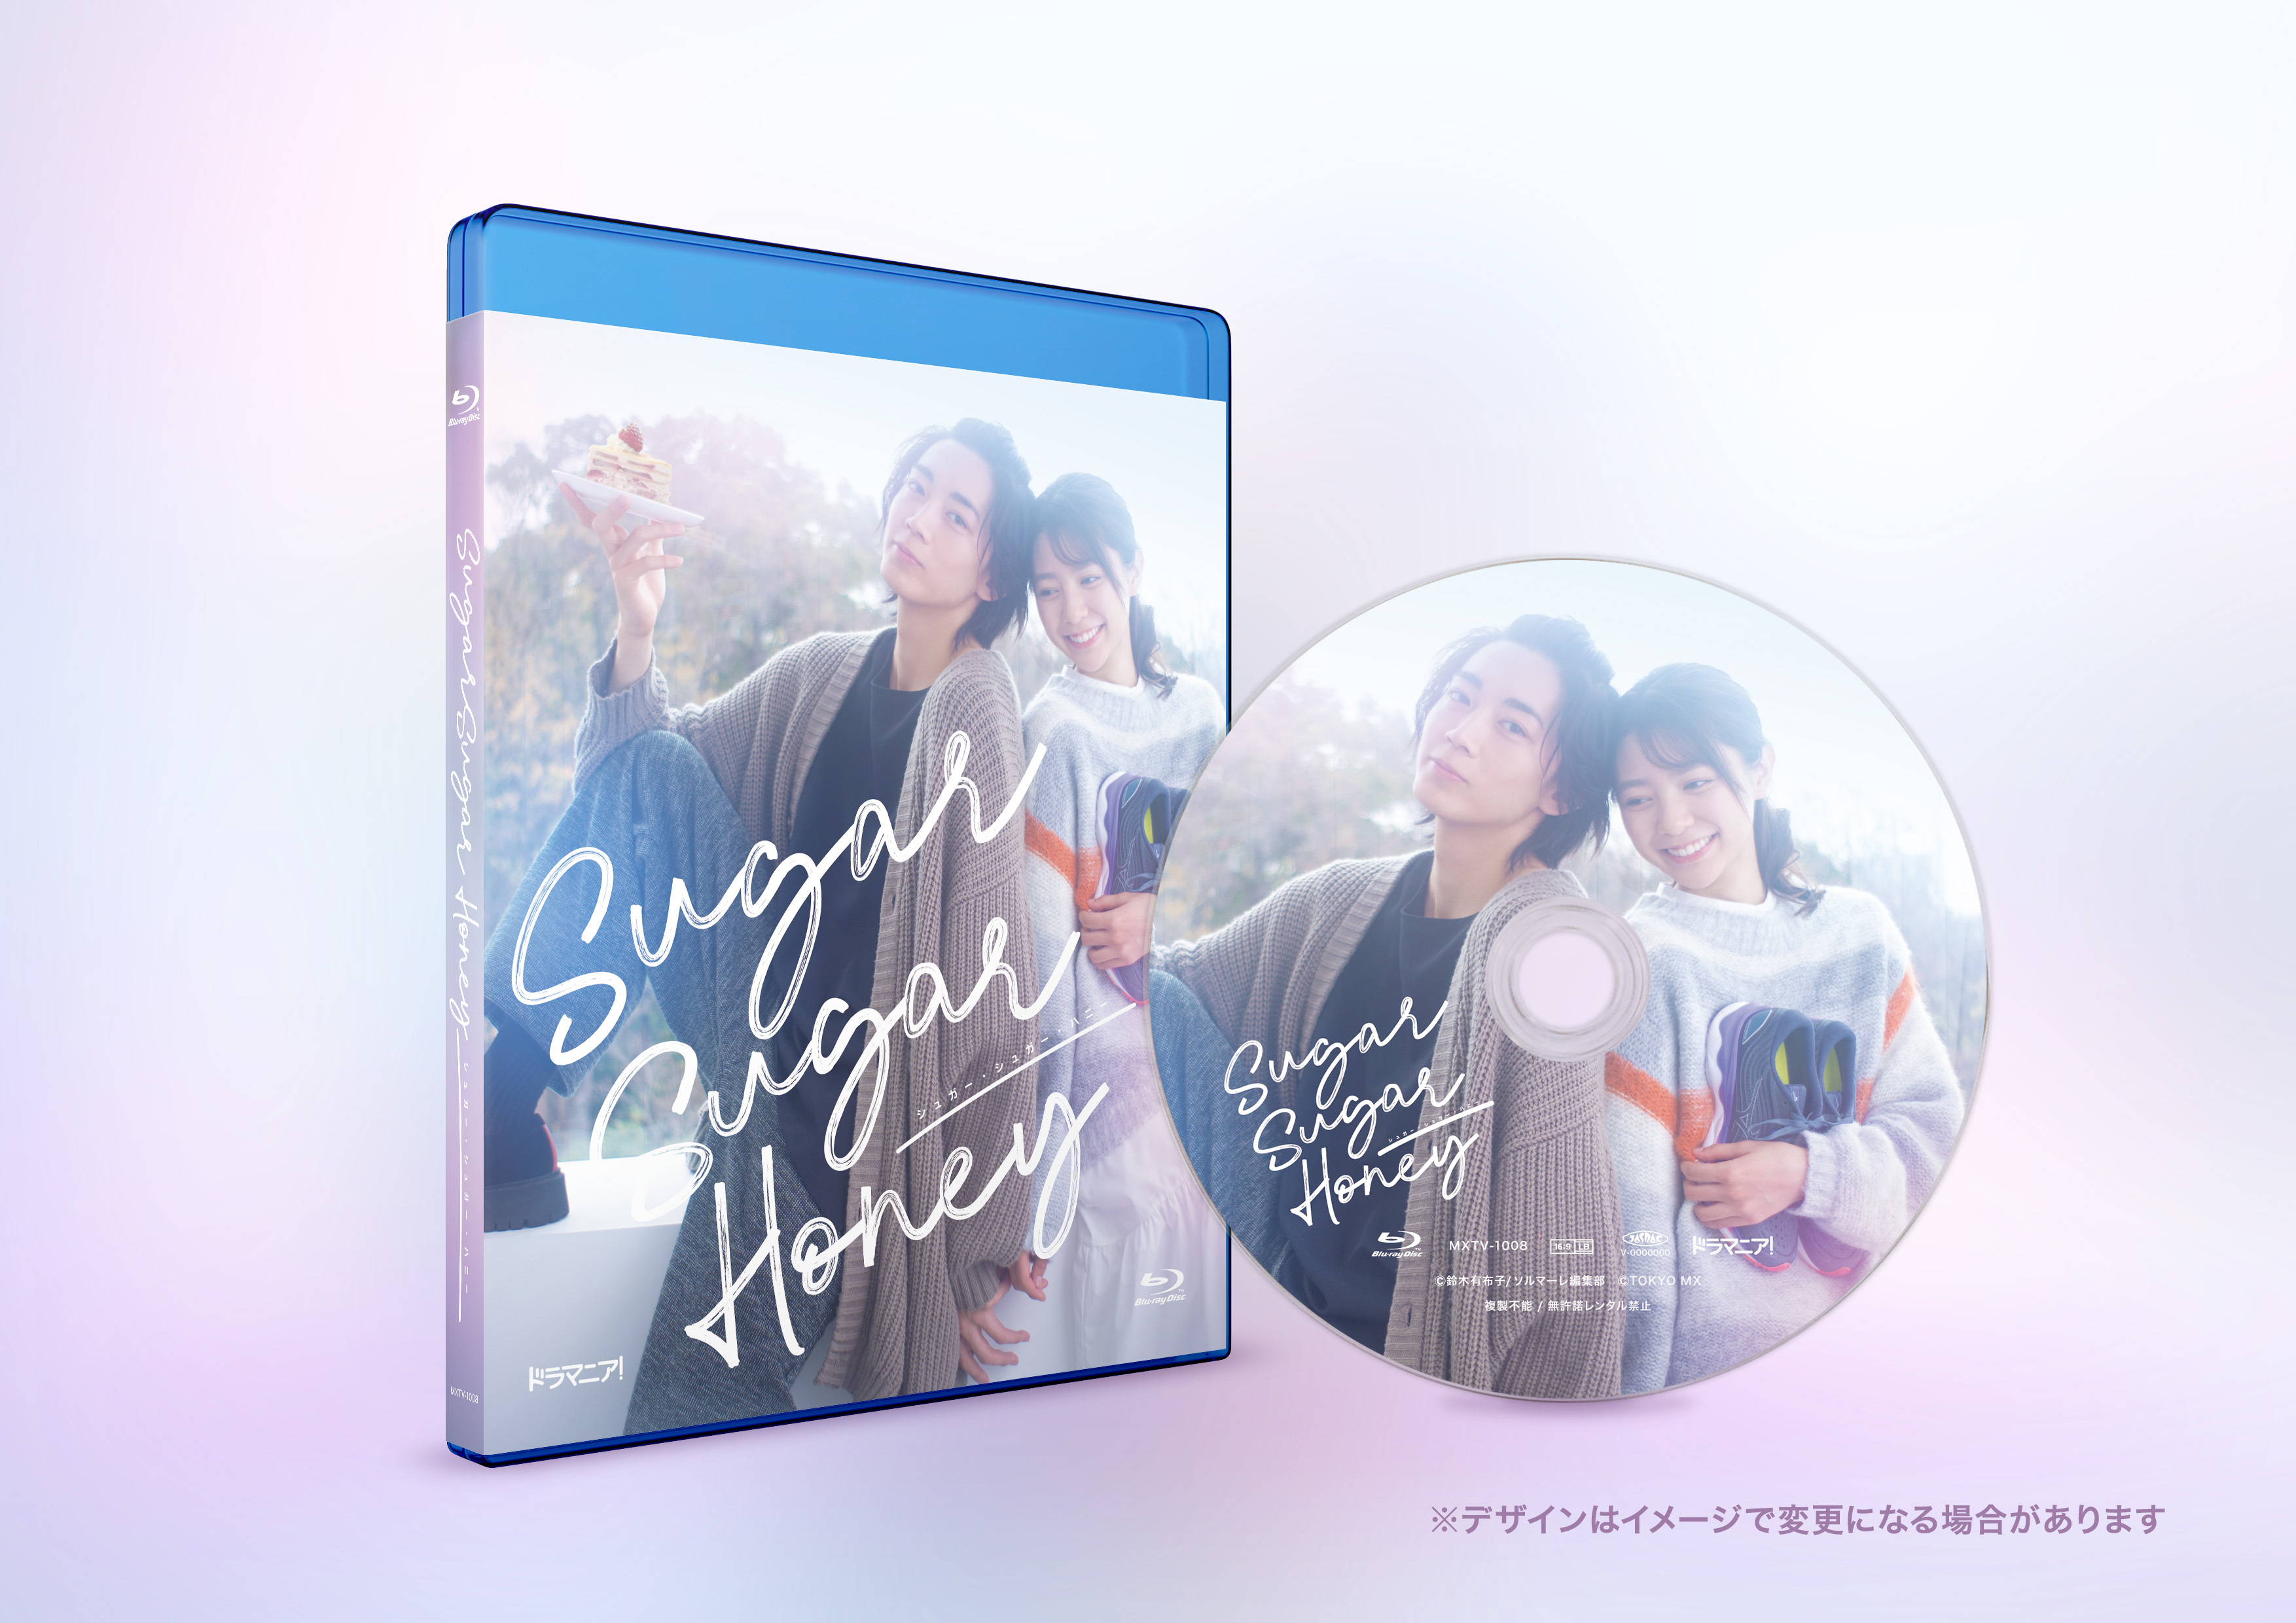 ドラマ「Sugar Sugar Honey」Blu-ray